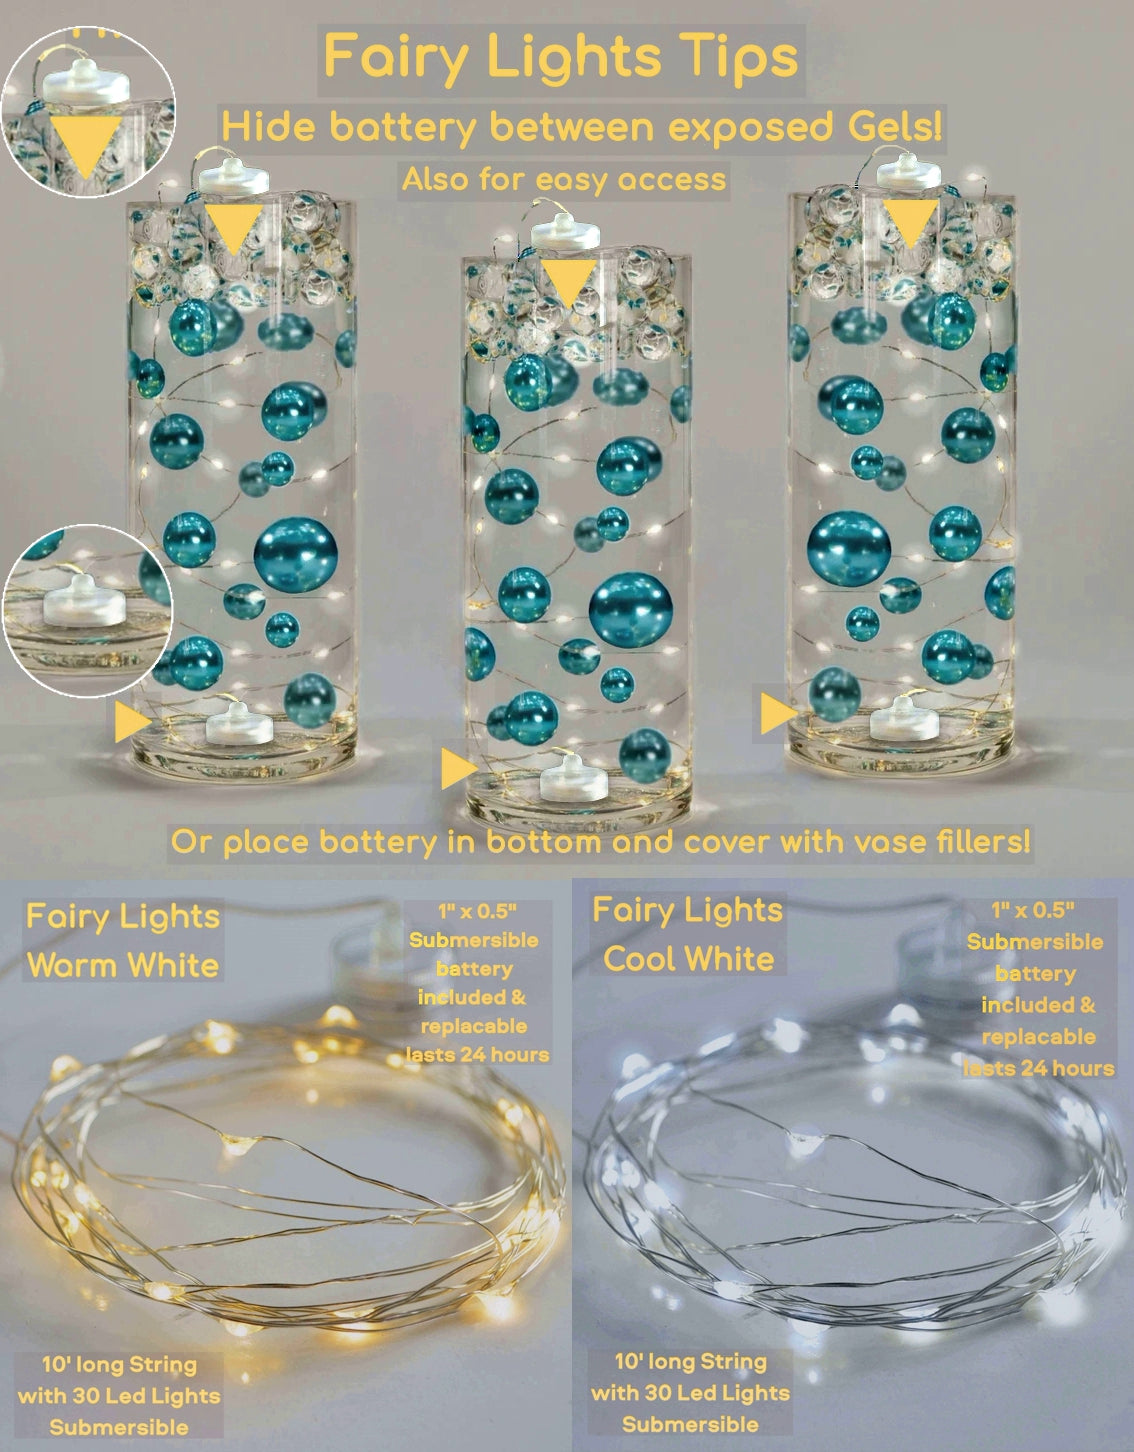 Perlas de lavanda "flotantes" - Decoraciones de jarrón de tamaños gigantes/varios sin agujeros